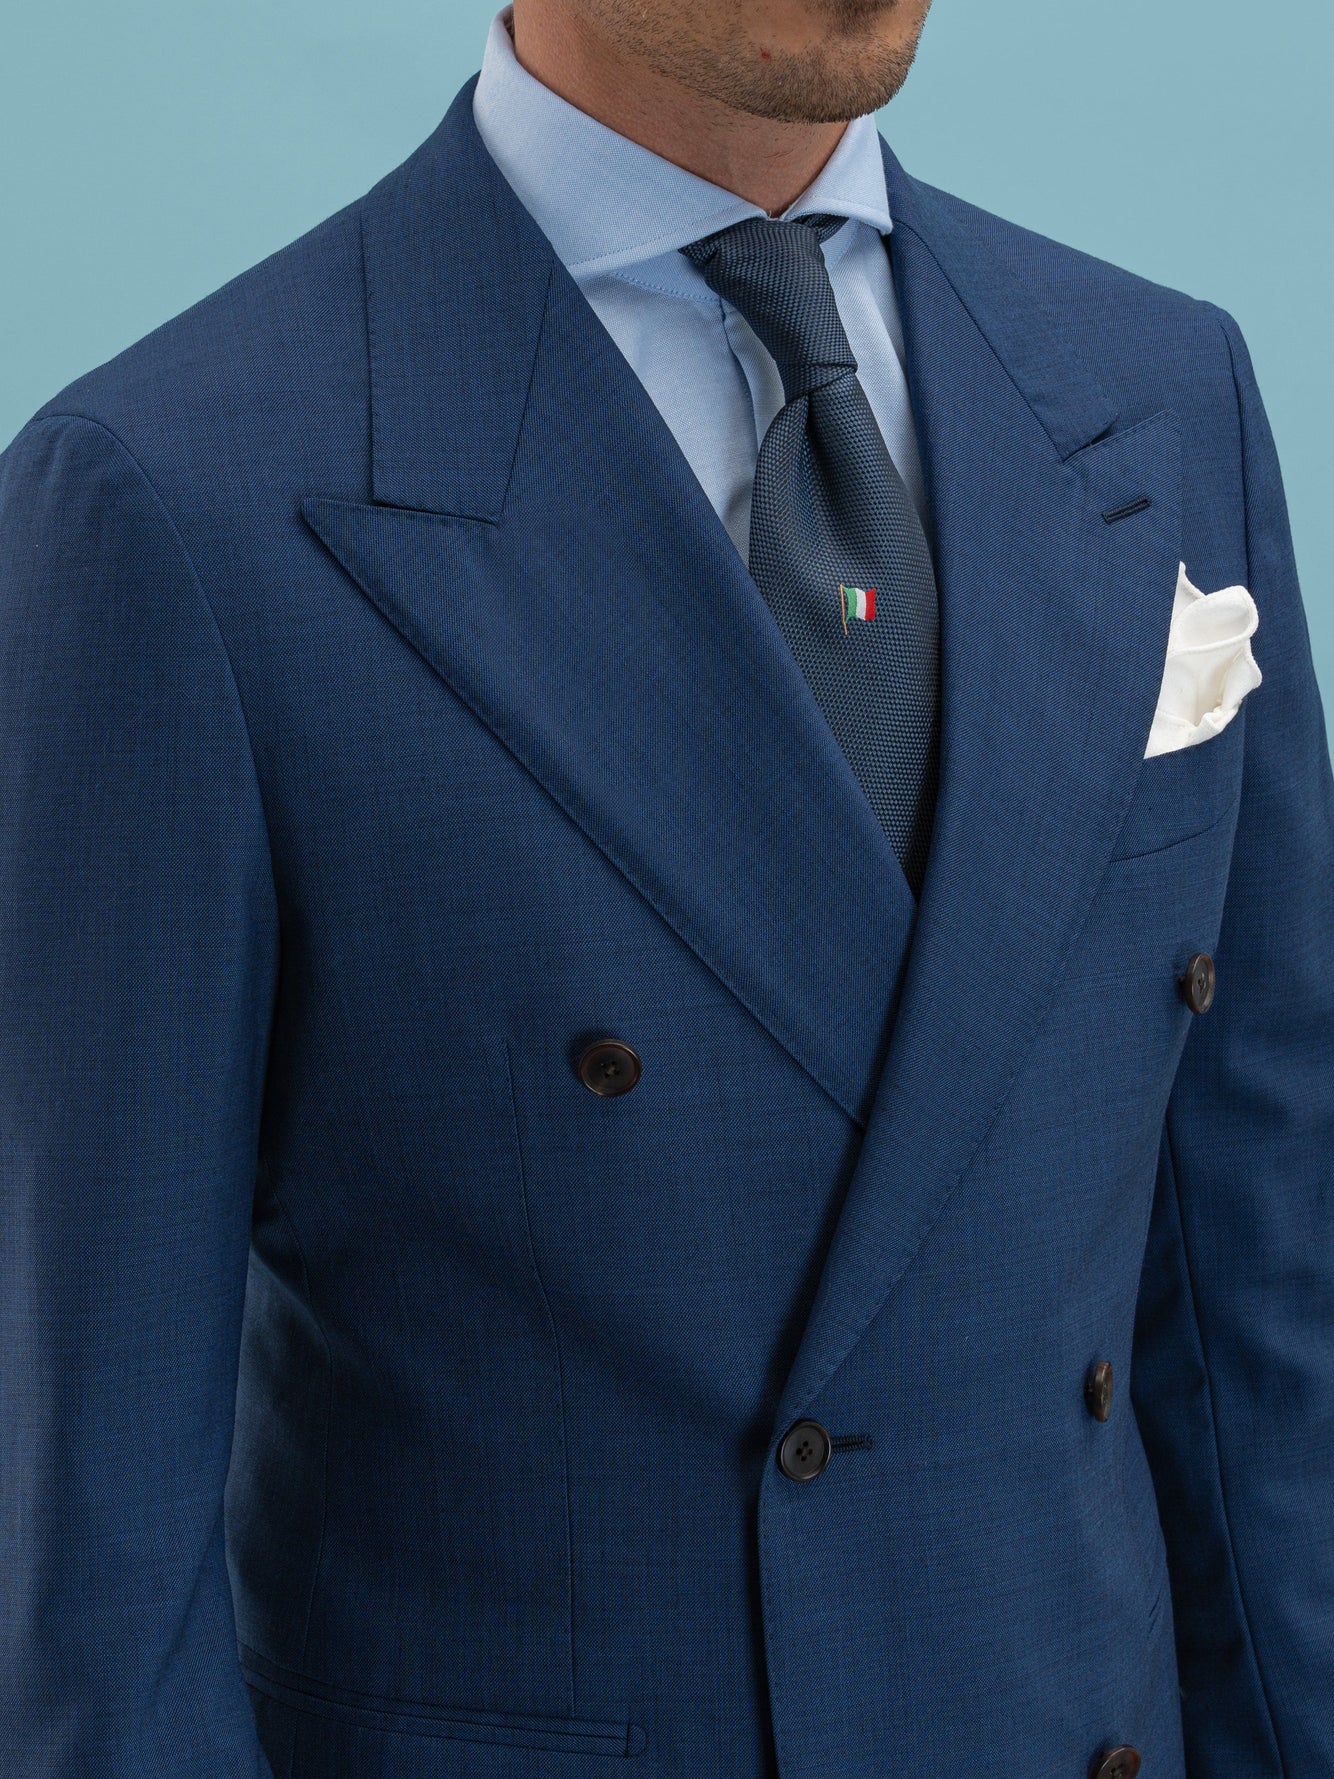 Blue Milano Suit - Grand Le Mar